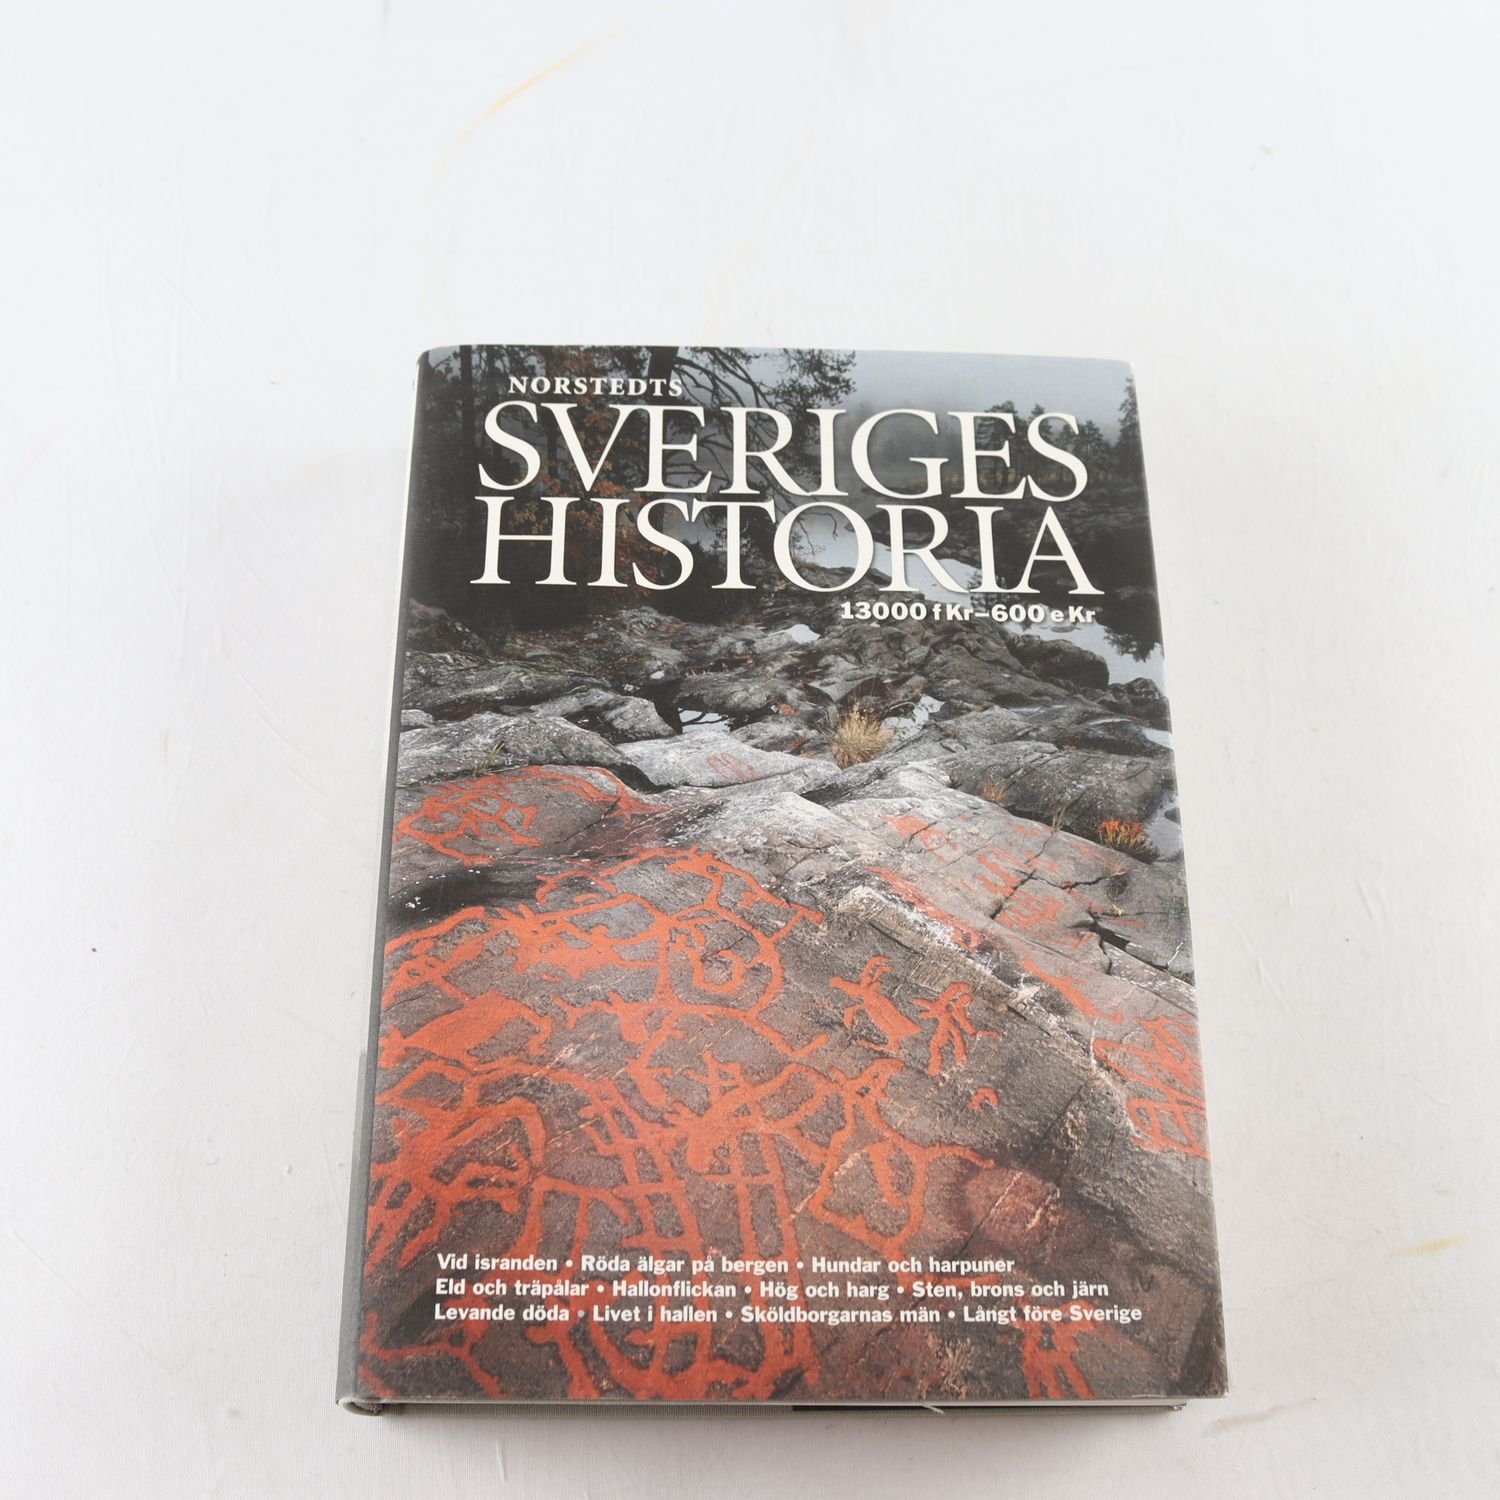 Norstedts Sveriges historia 13000 fKr-600 eKr, Stig Welinder